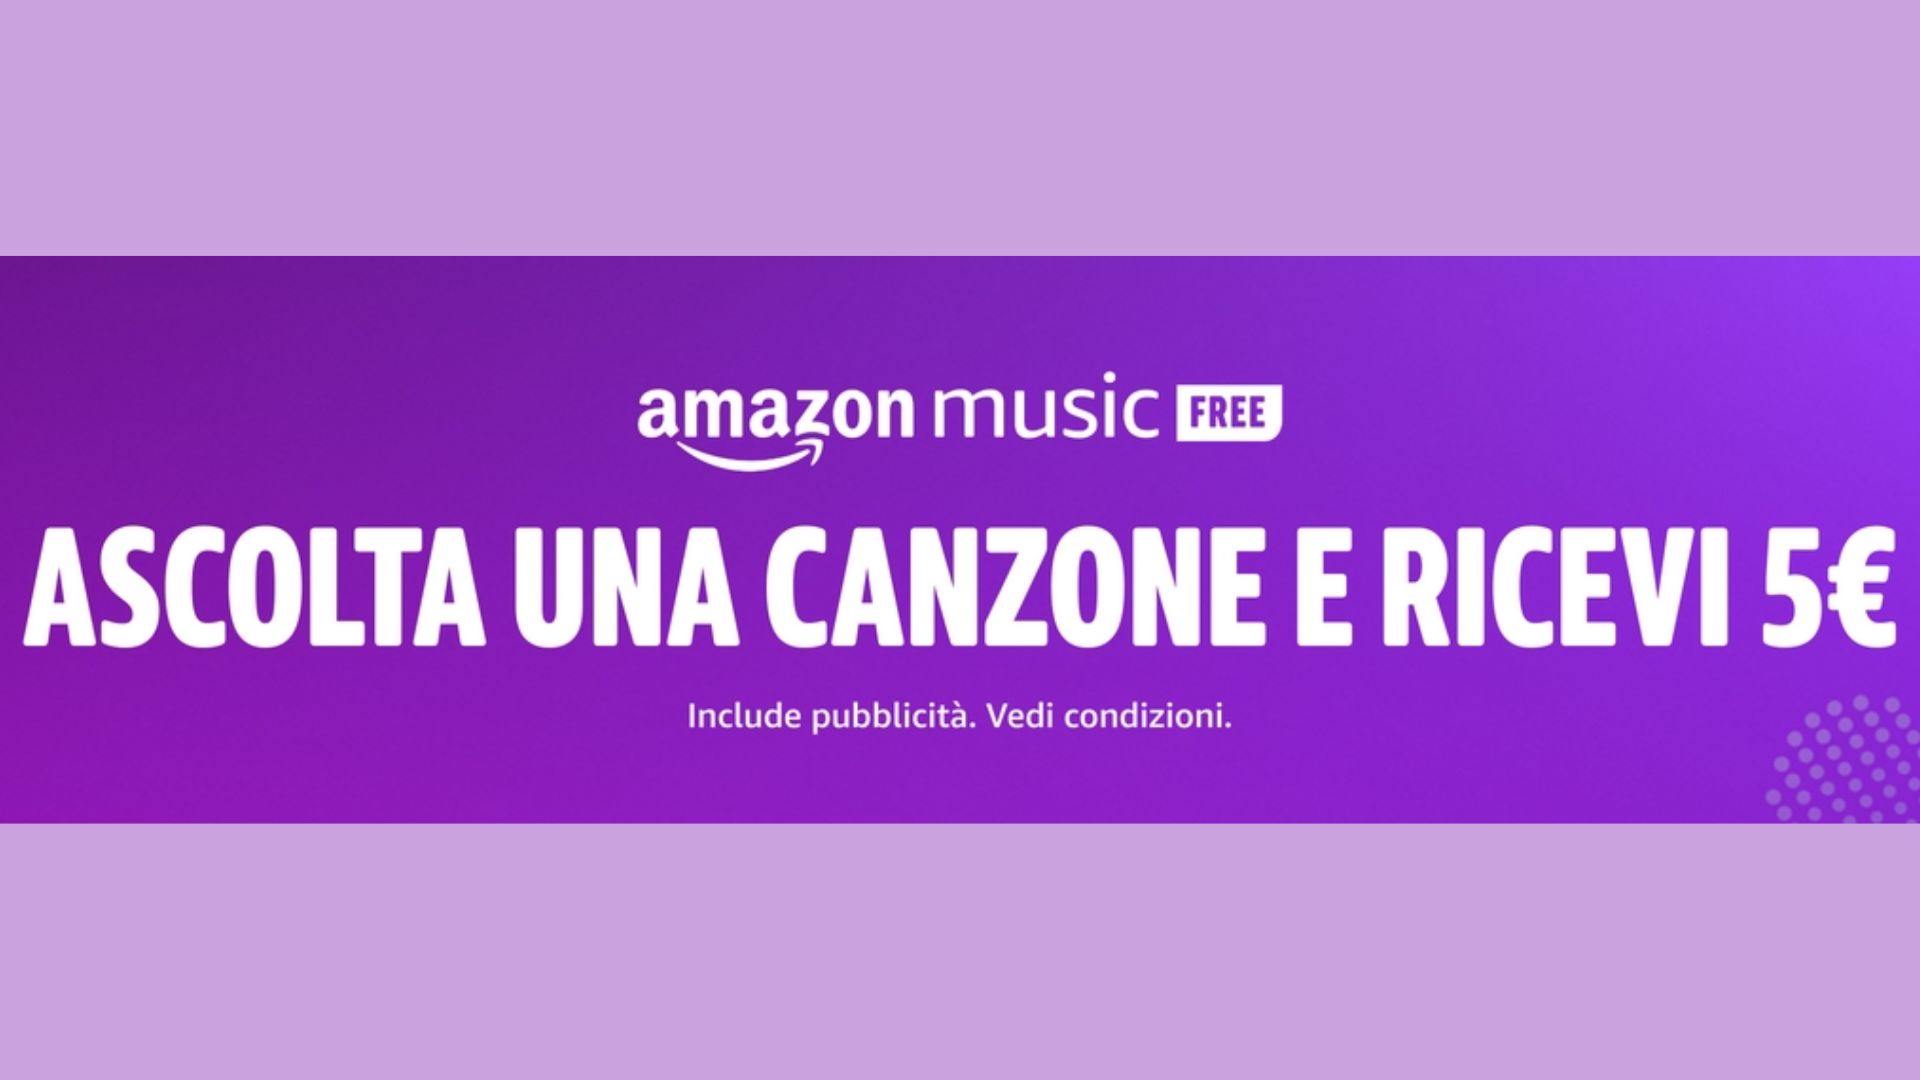 Amazon 5 euro in regalo con Music Free